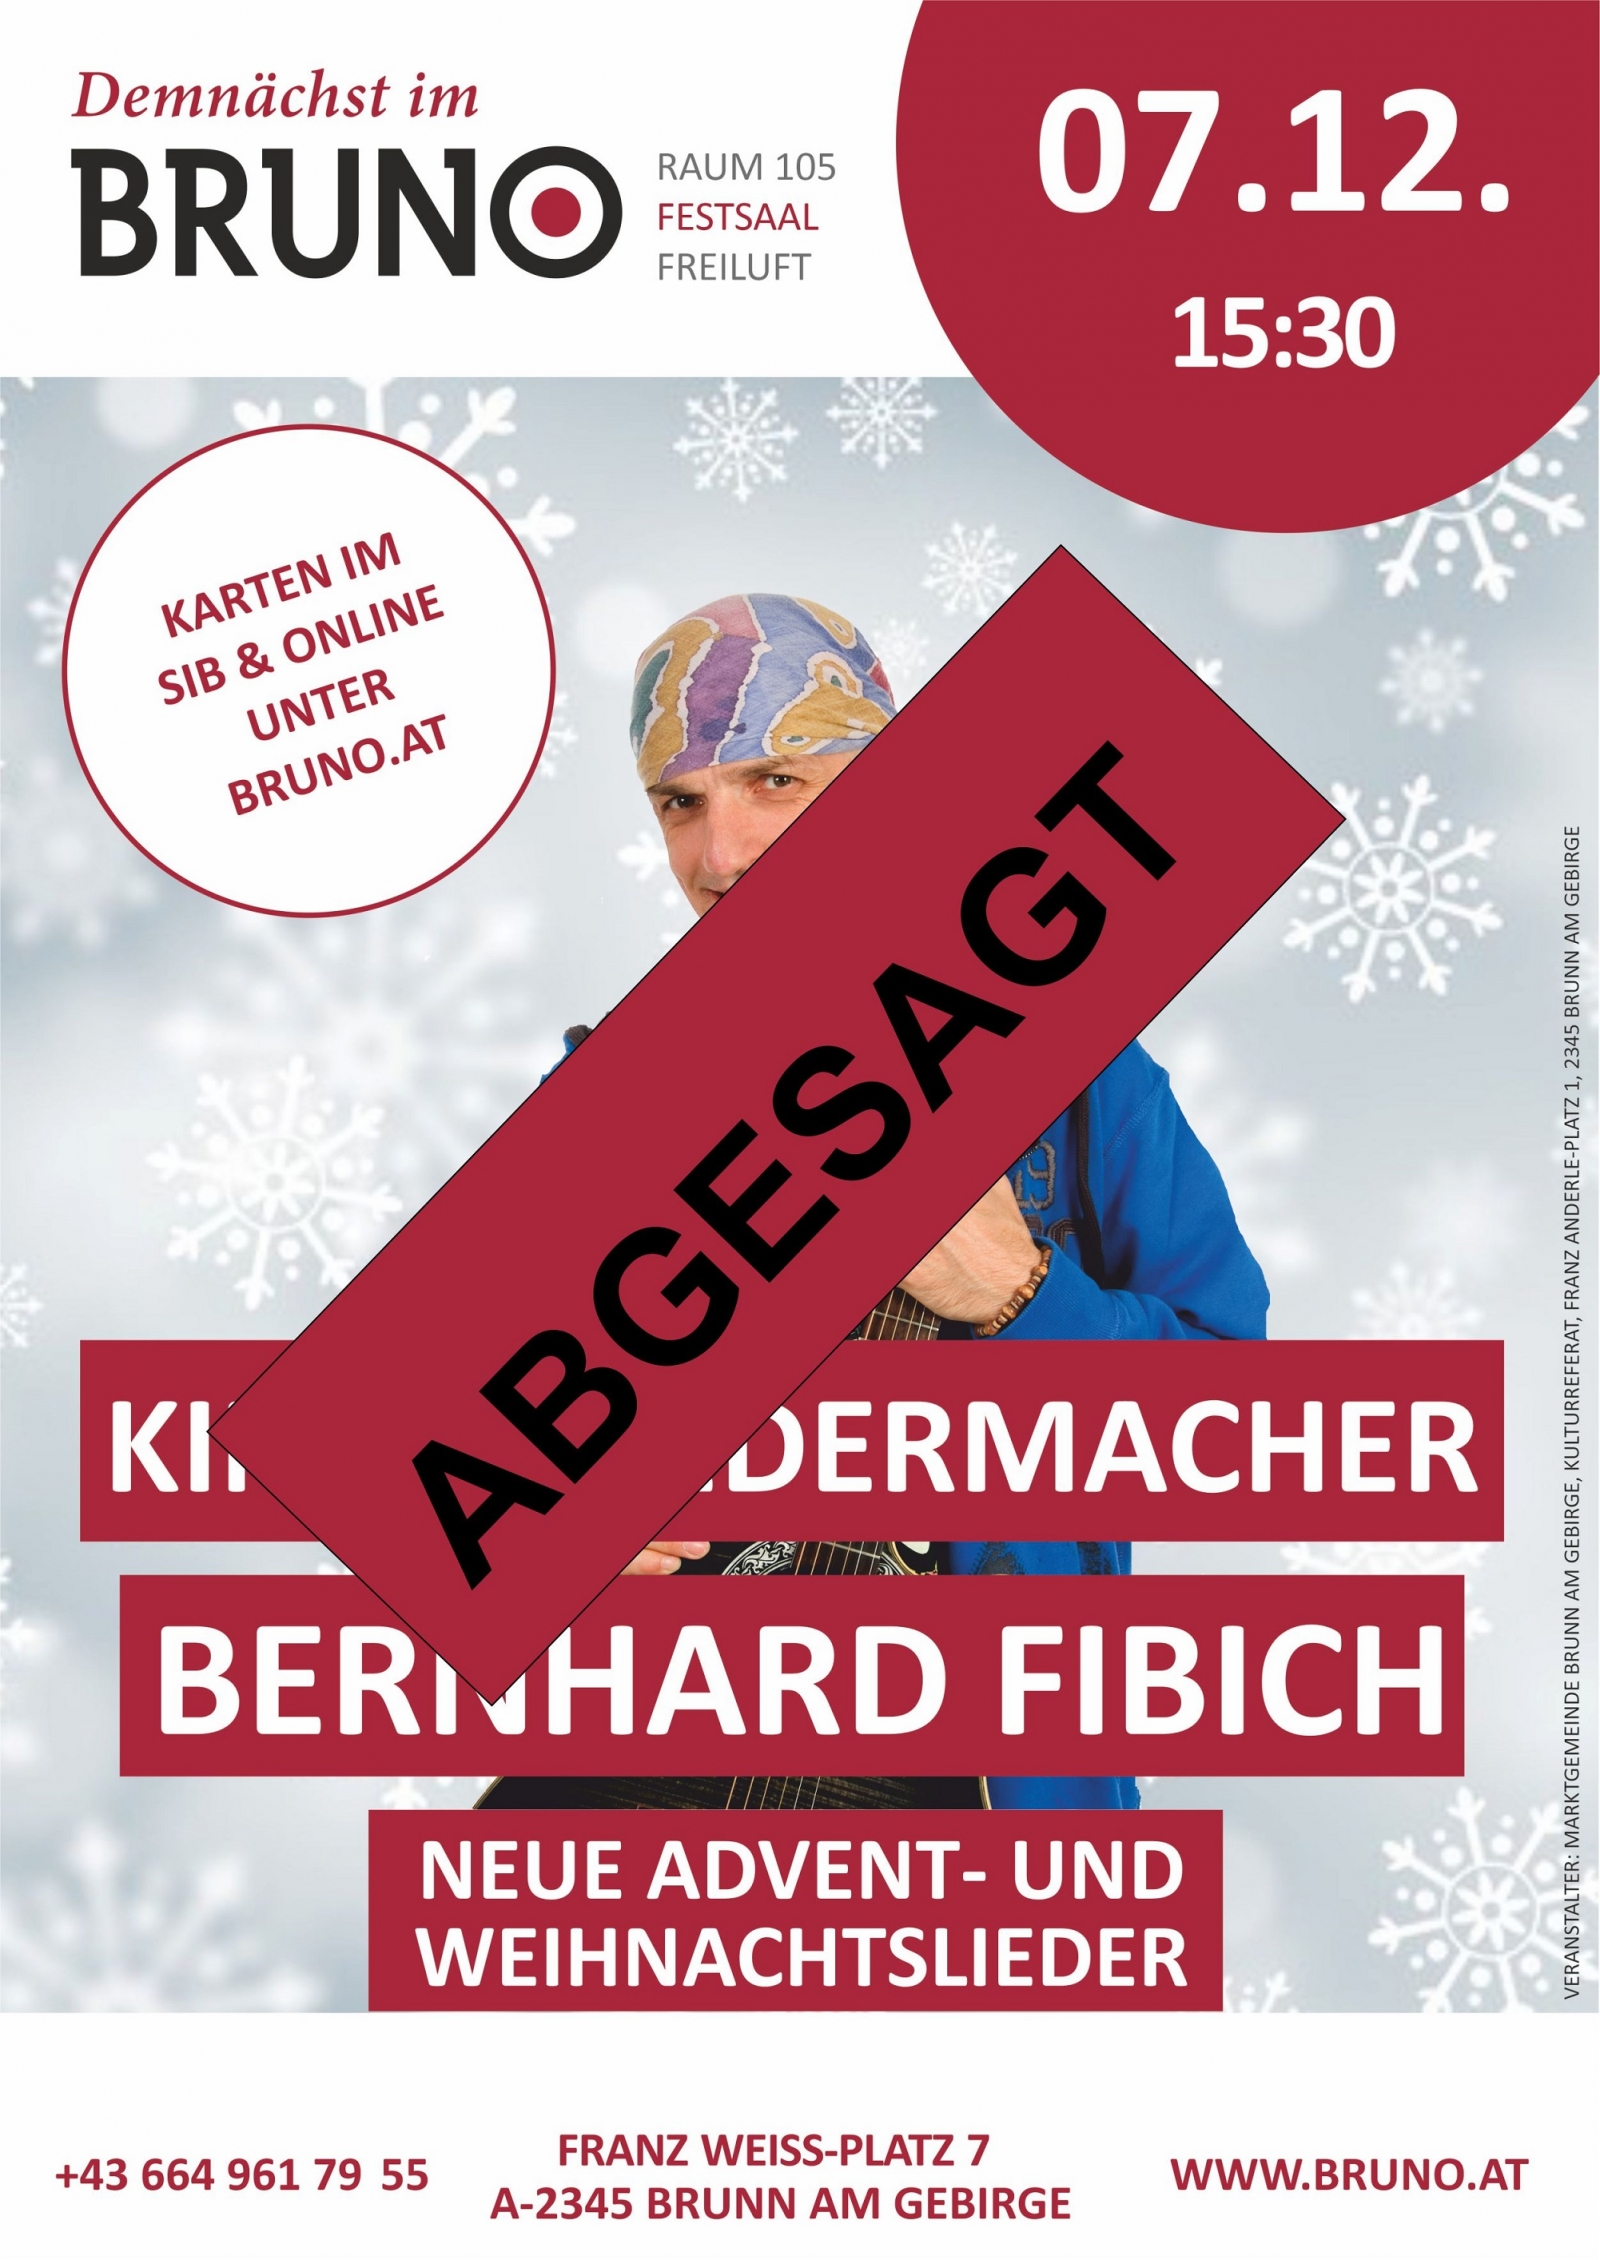 Bernhard Fibich – „Neue Advent- und Weihnachtslieder